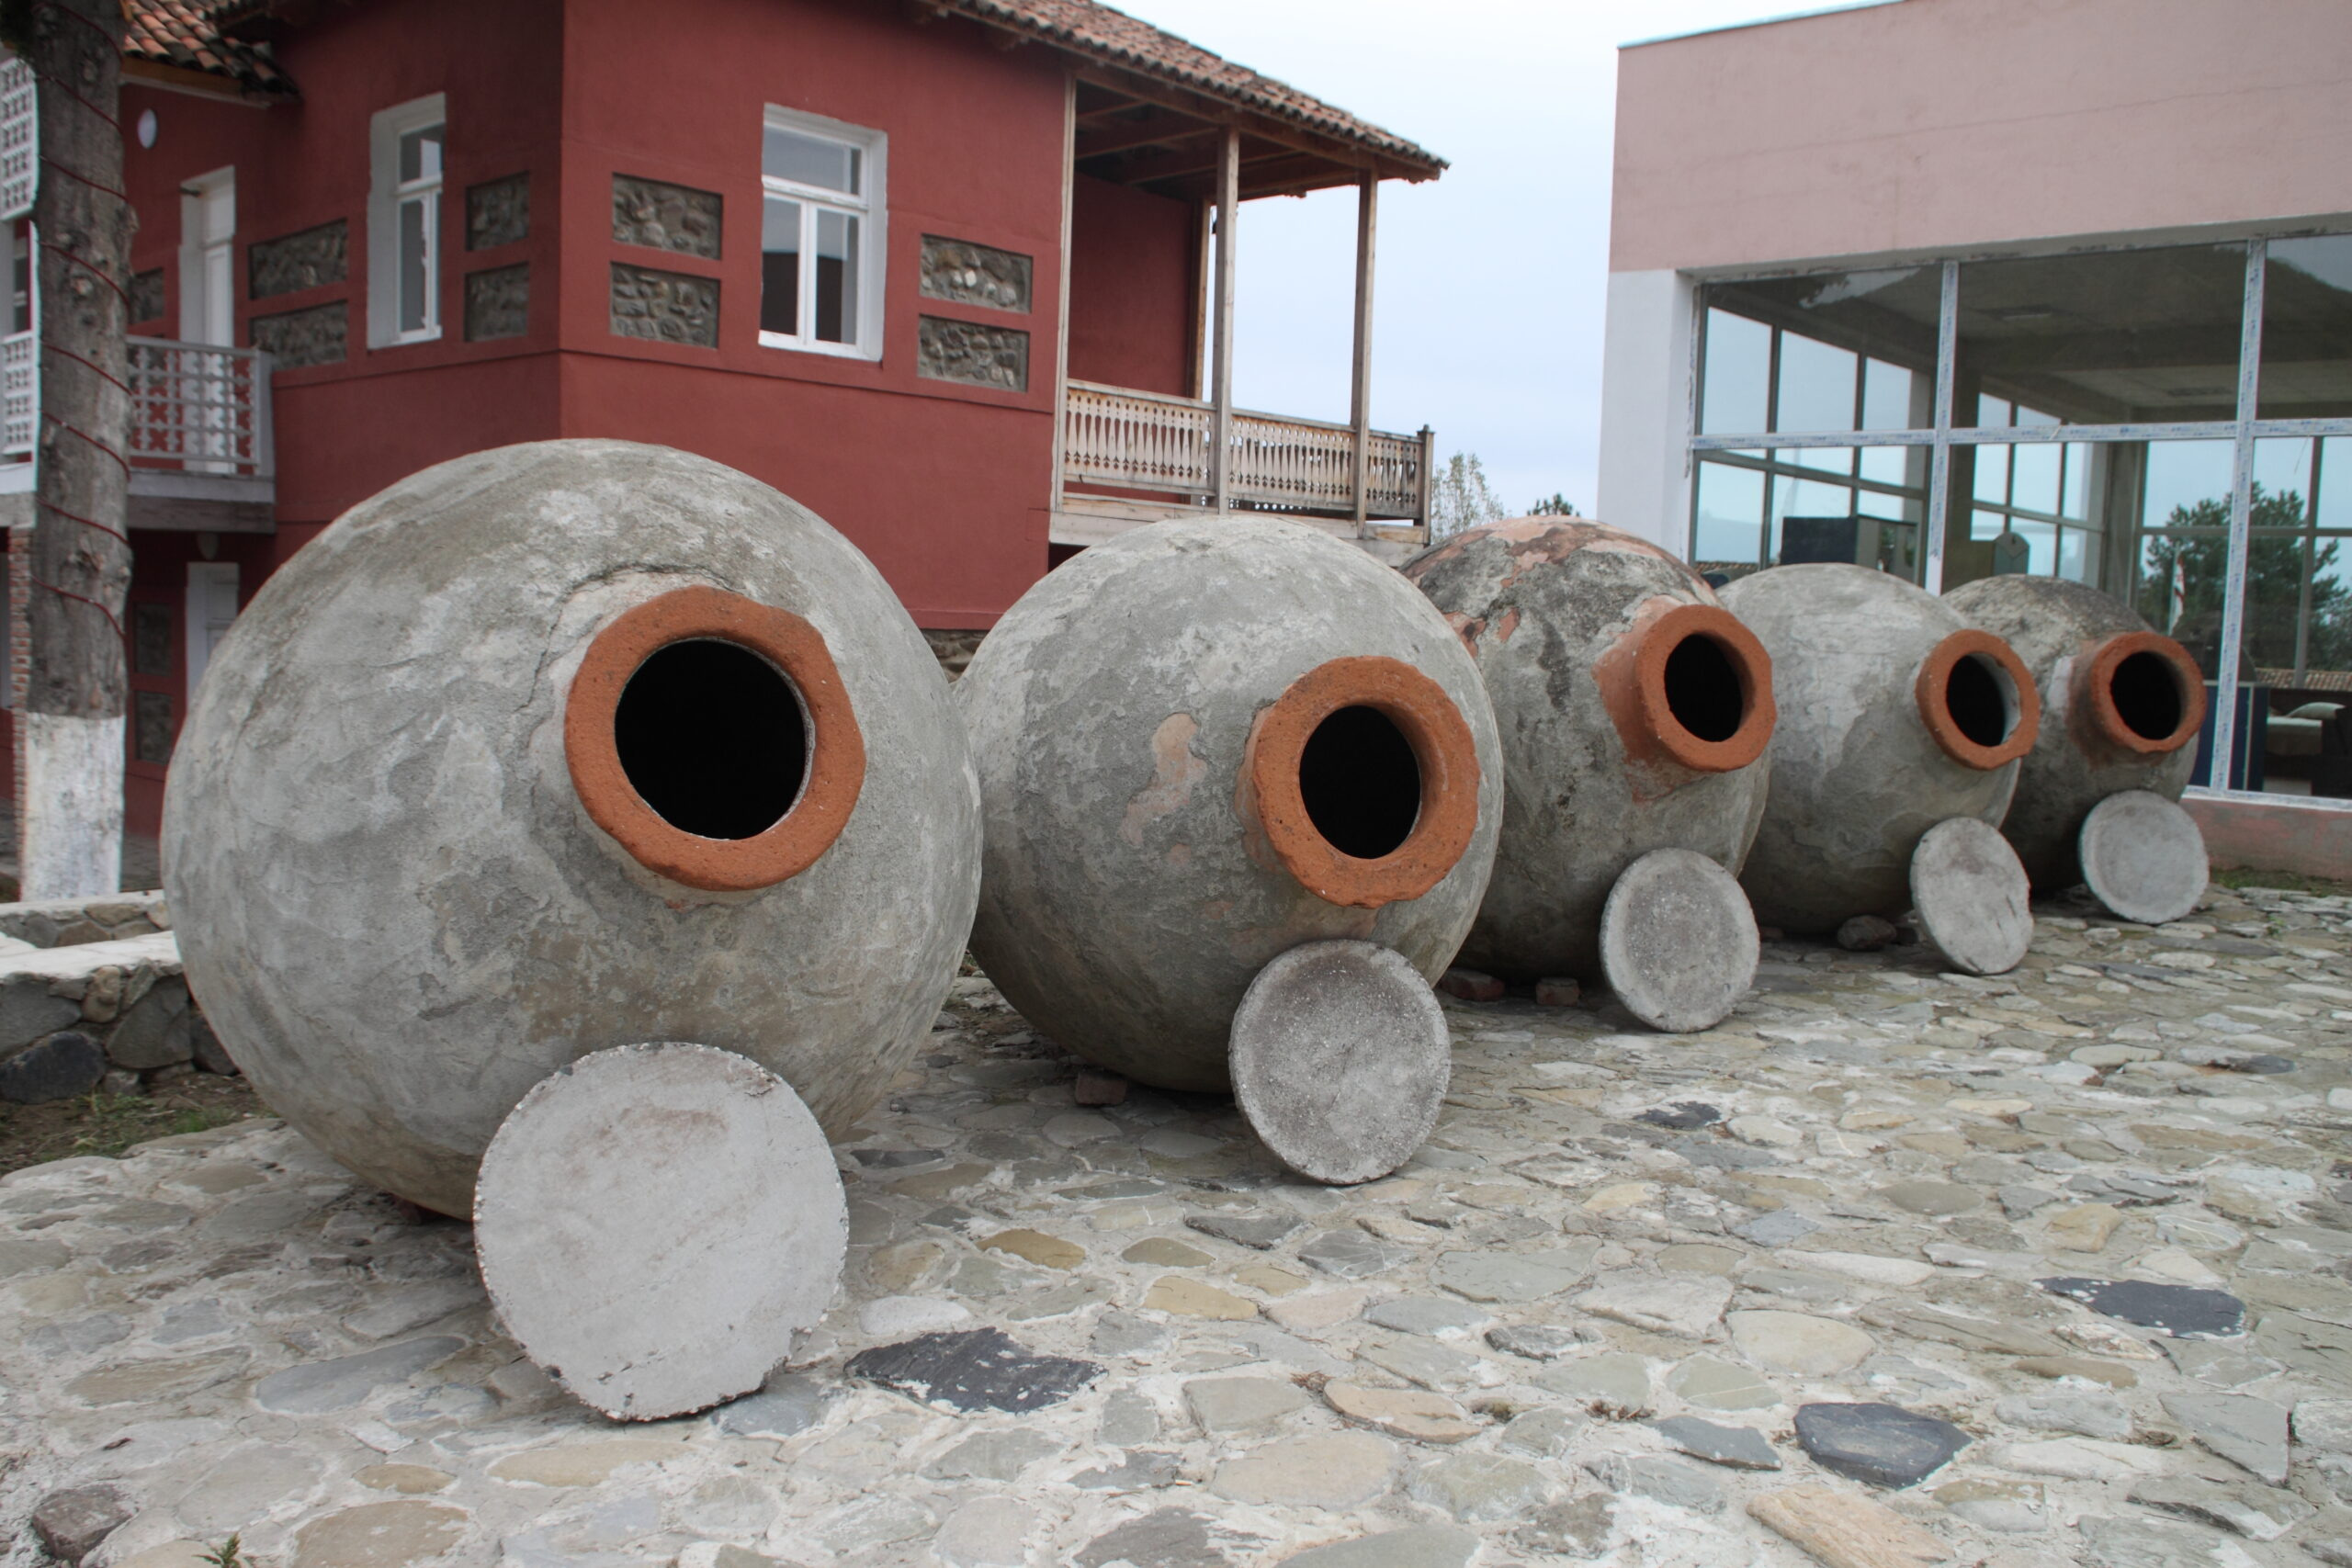 V kvalitních nádobách může zrát víno i několik let, neboť stěny jsou porézní a keramika zakopaná v zemi udržuje stálou teplotu.